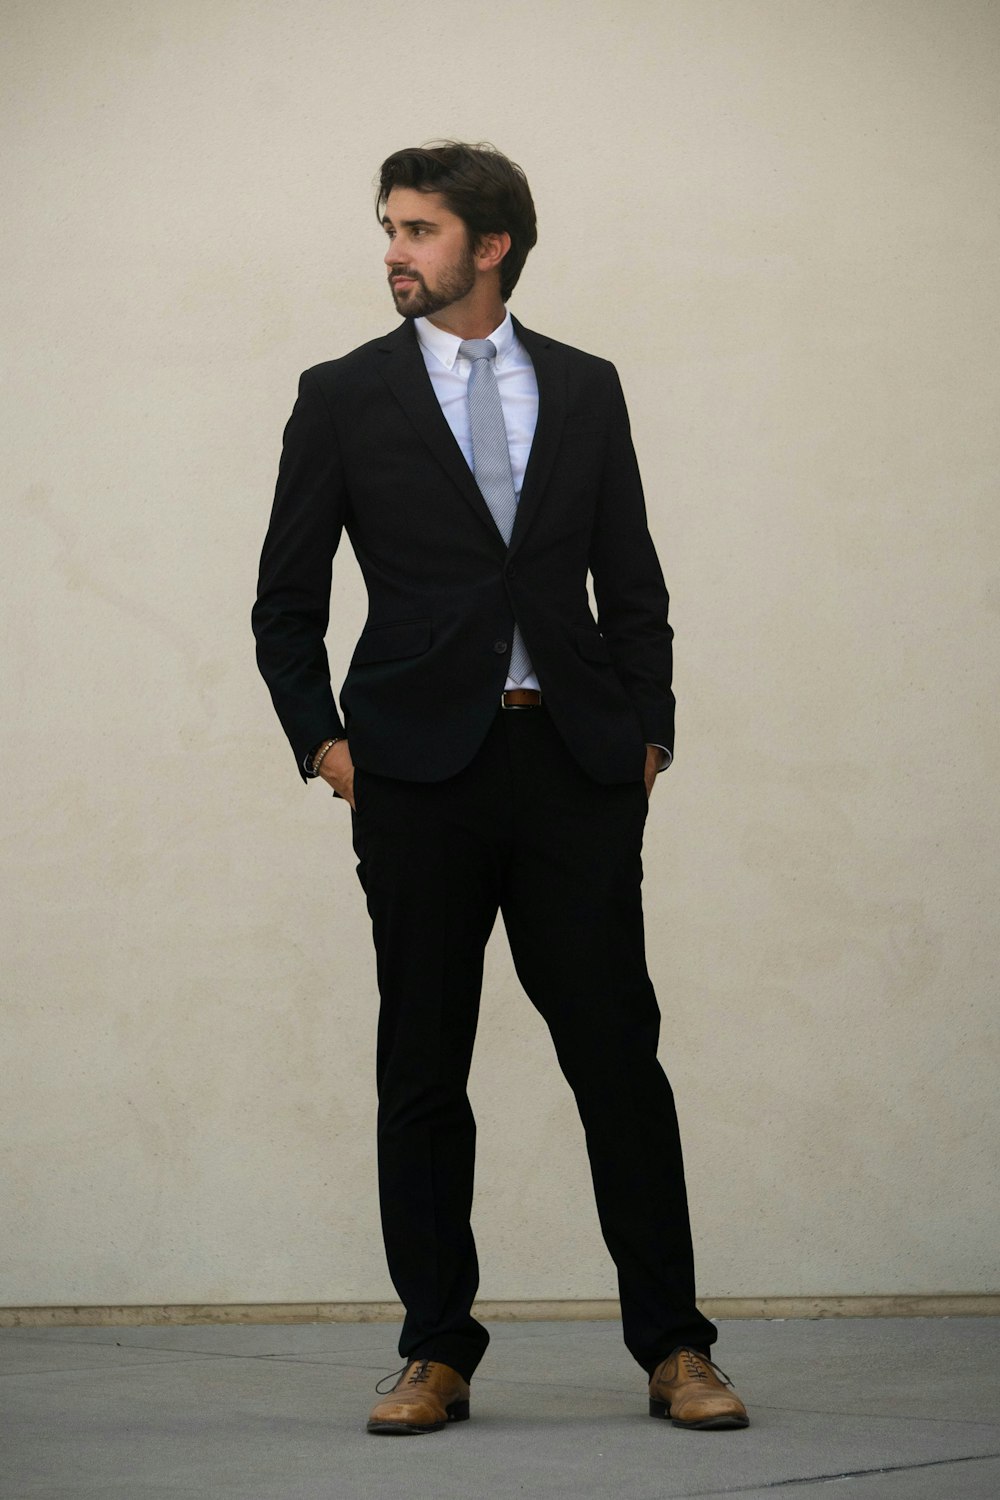 man in black suit standing